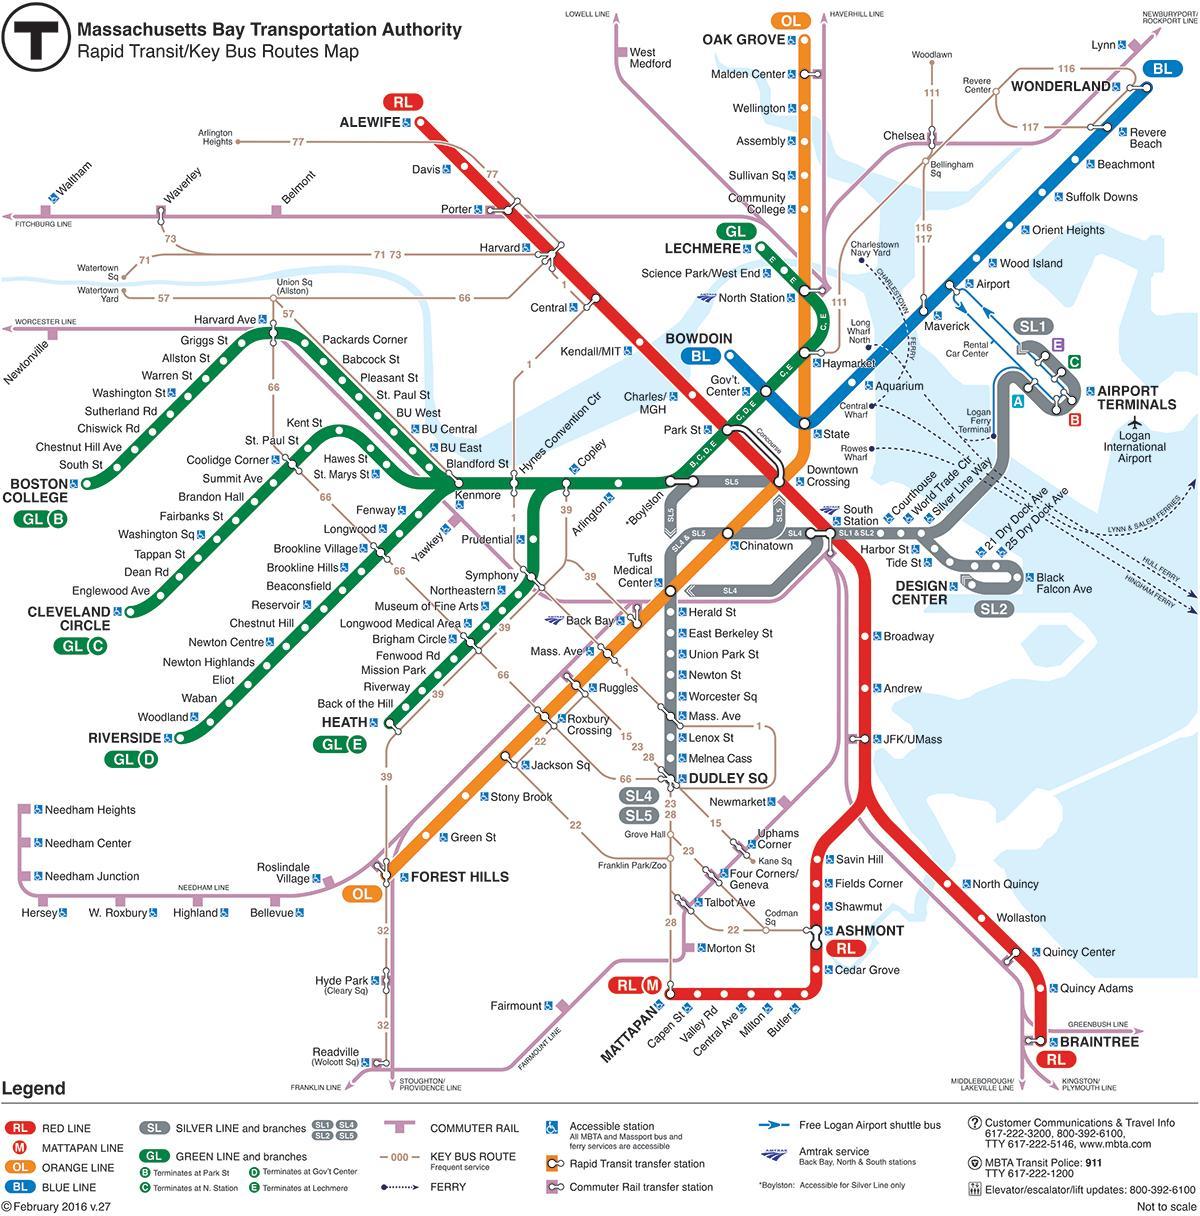 MBTA мапата црвена линија